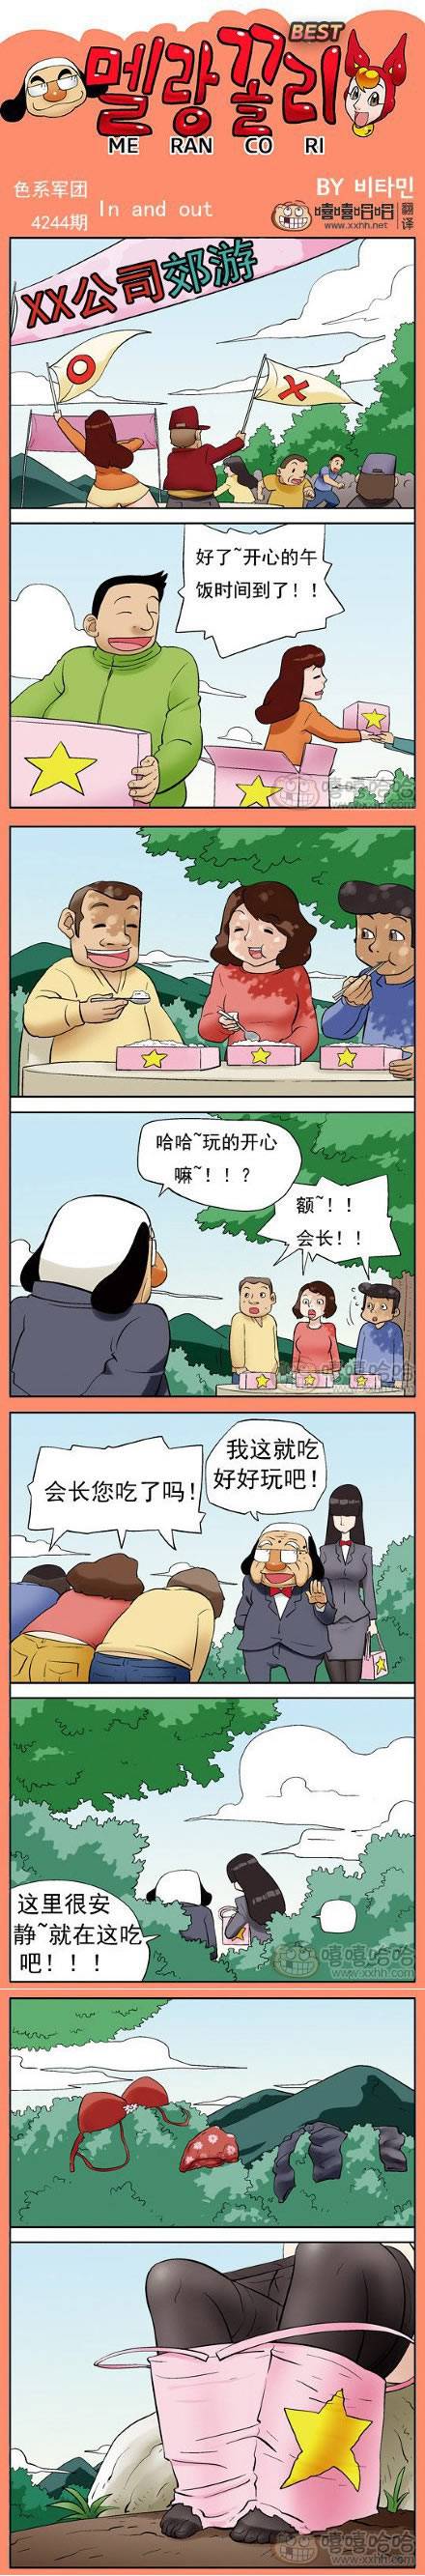 邪恶漫画爆笑囧图第174刊：累死了